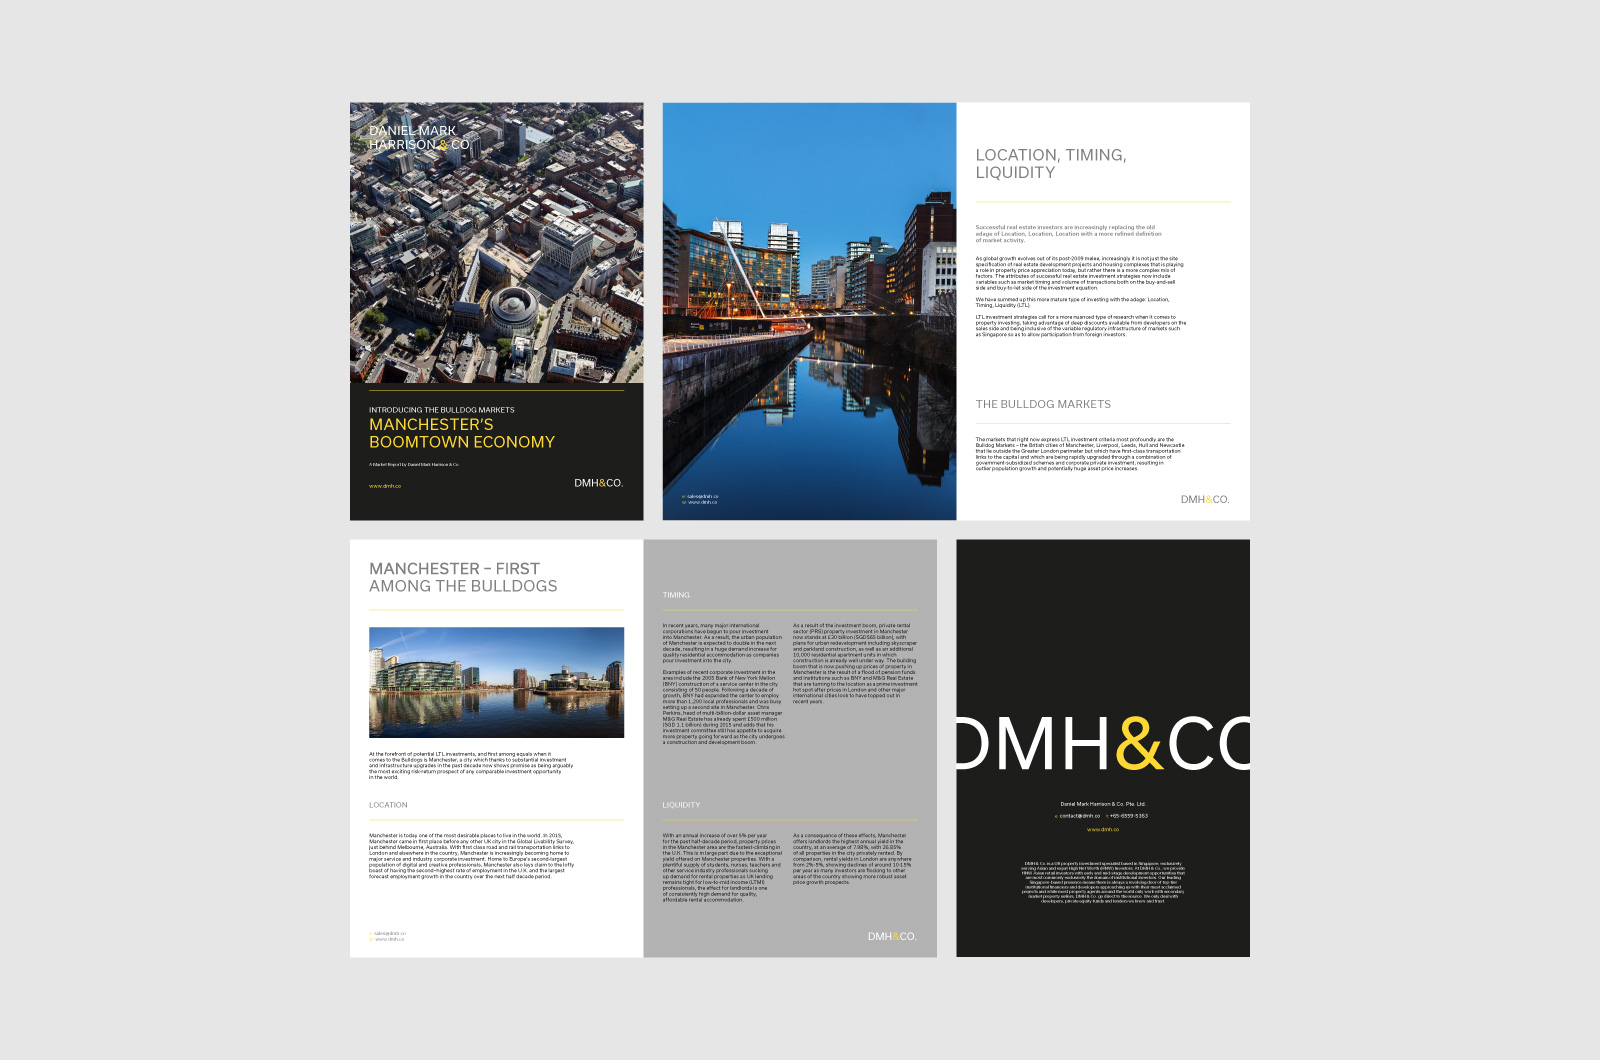 DMH&CO Digital Guide